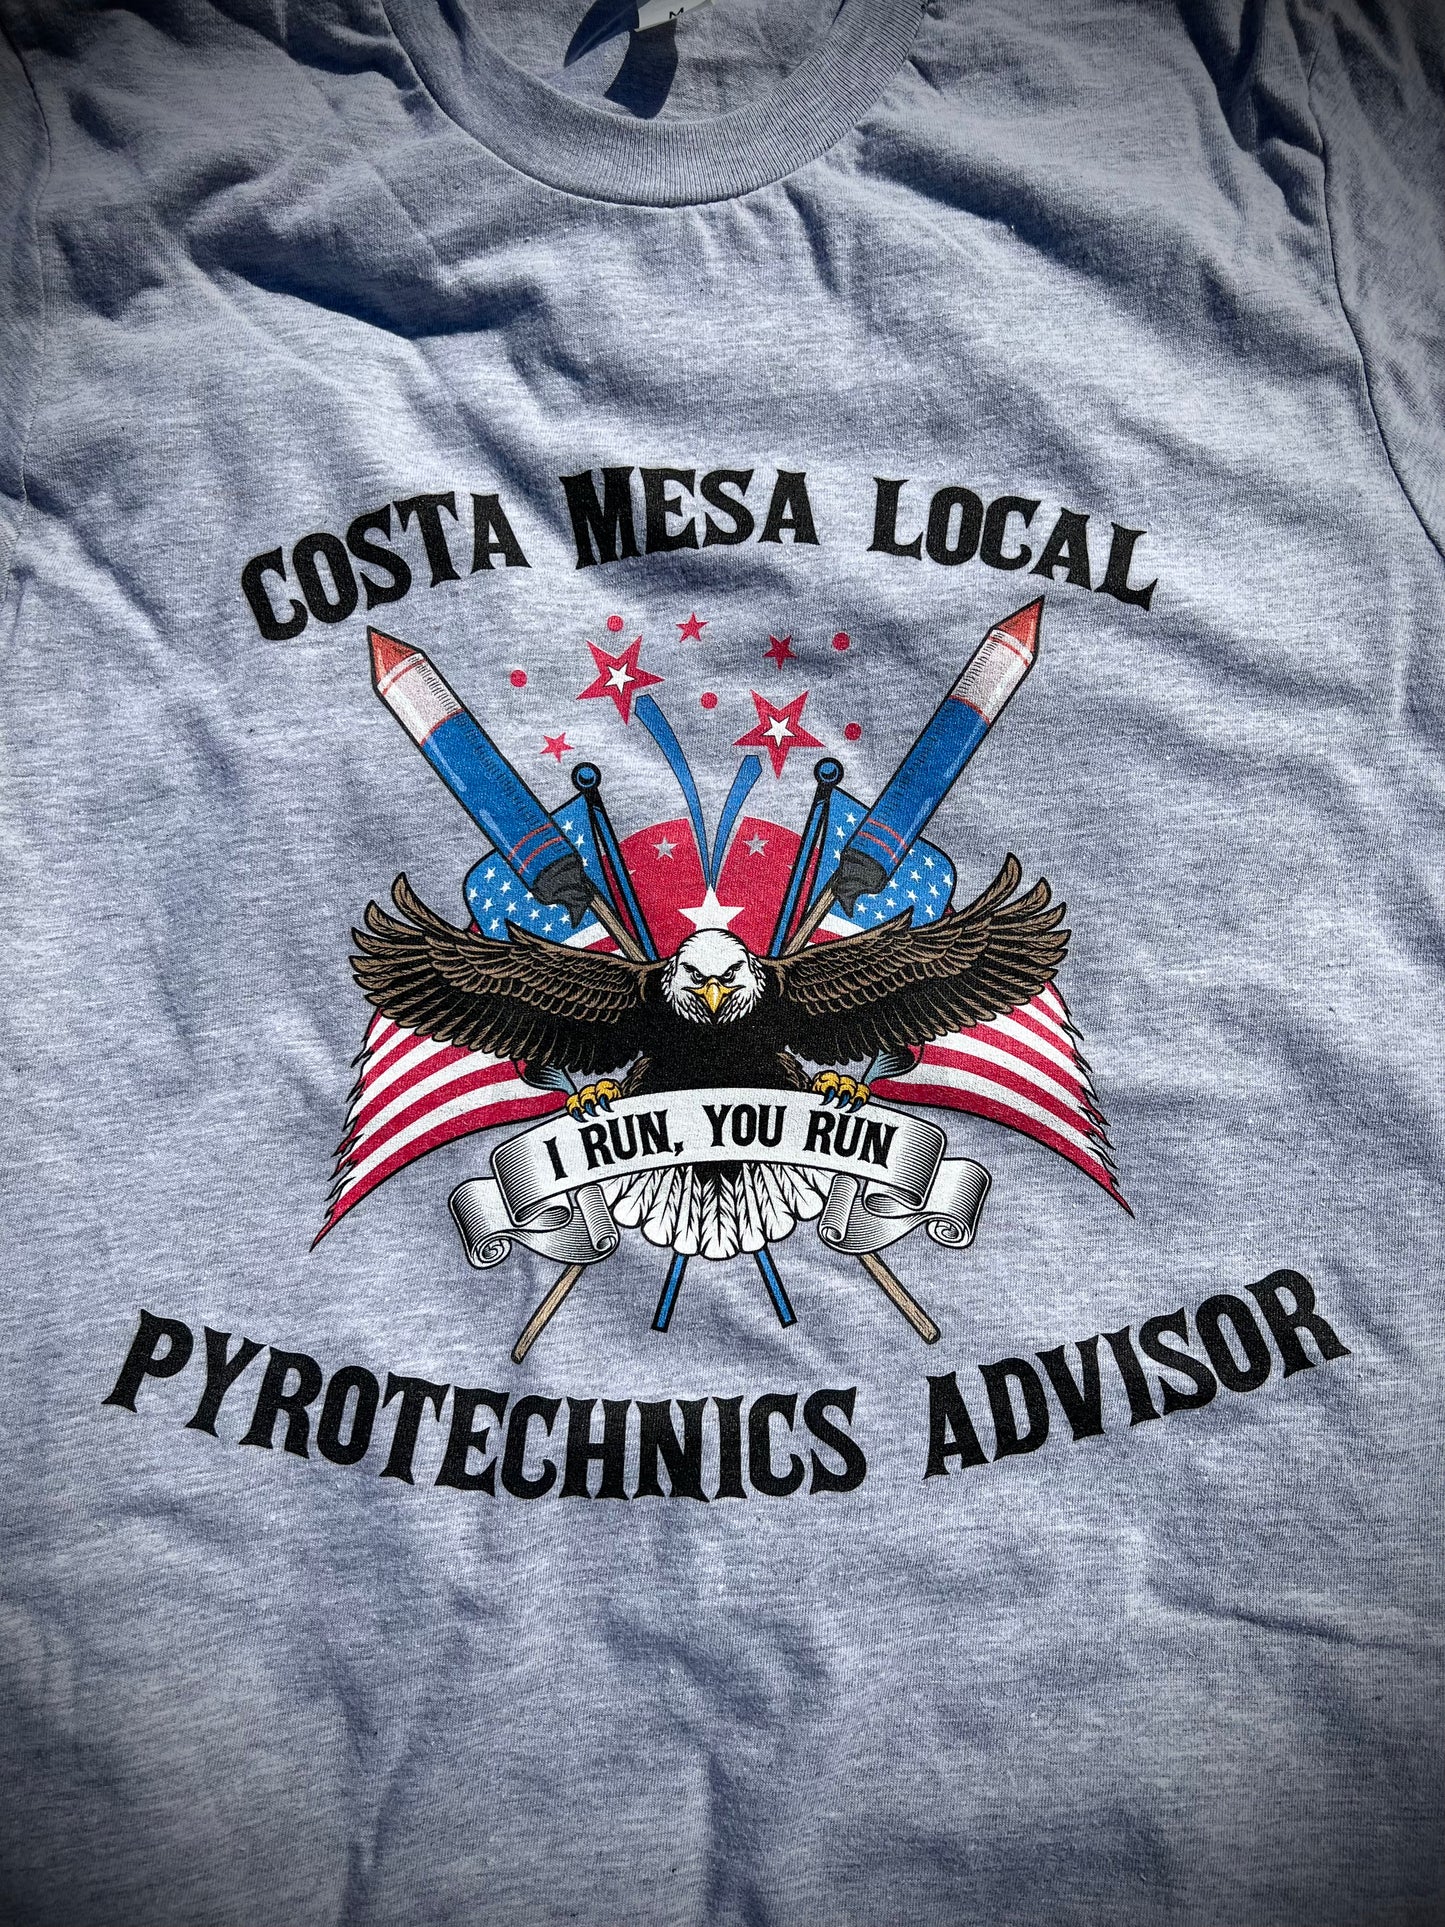 Costa Mesa Pyrotechnics Advisor